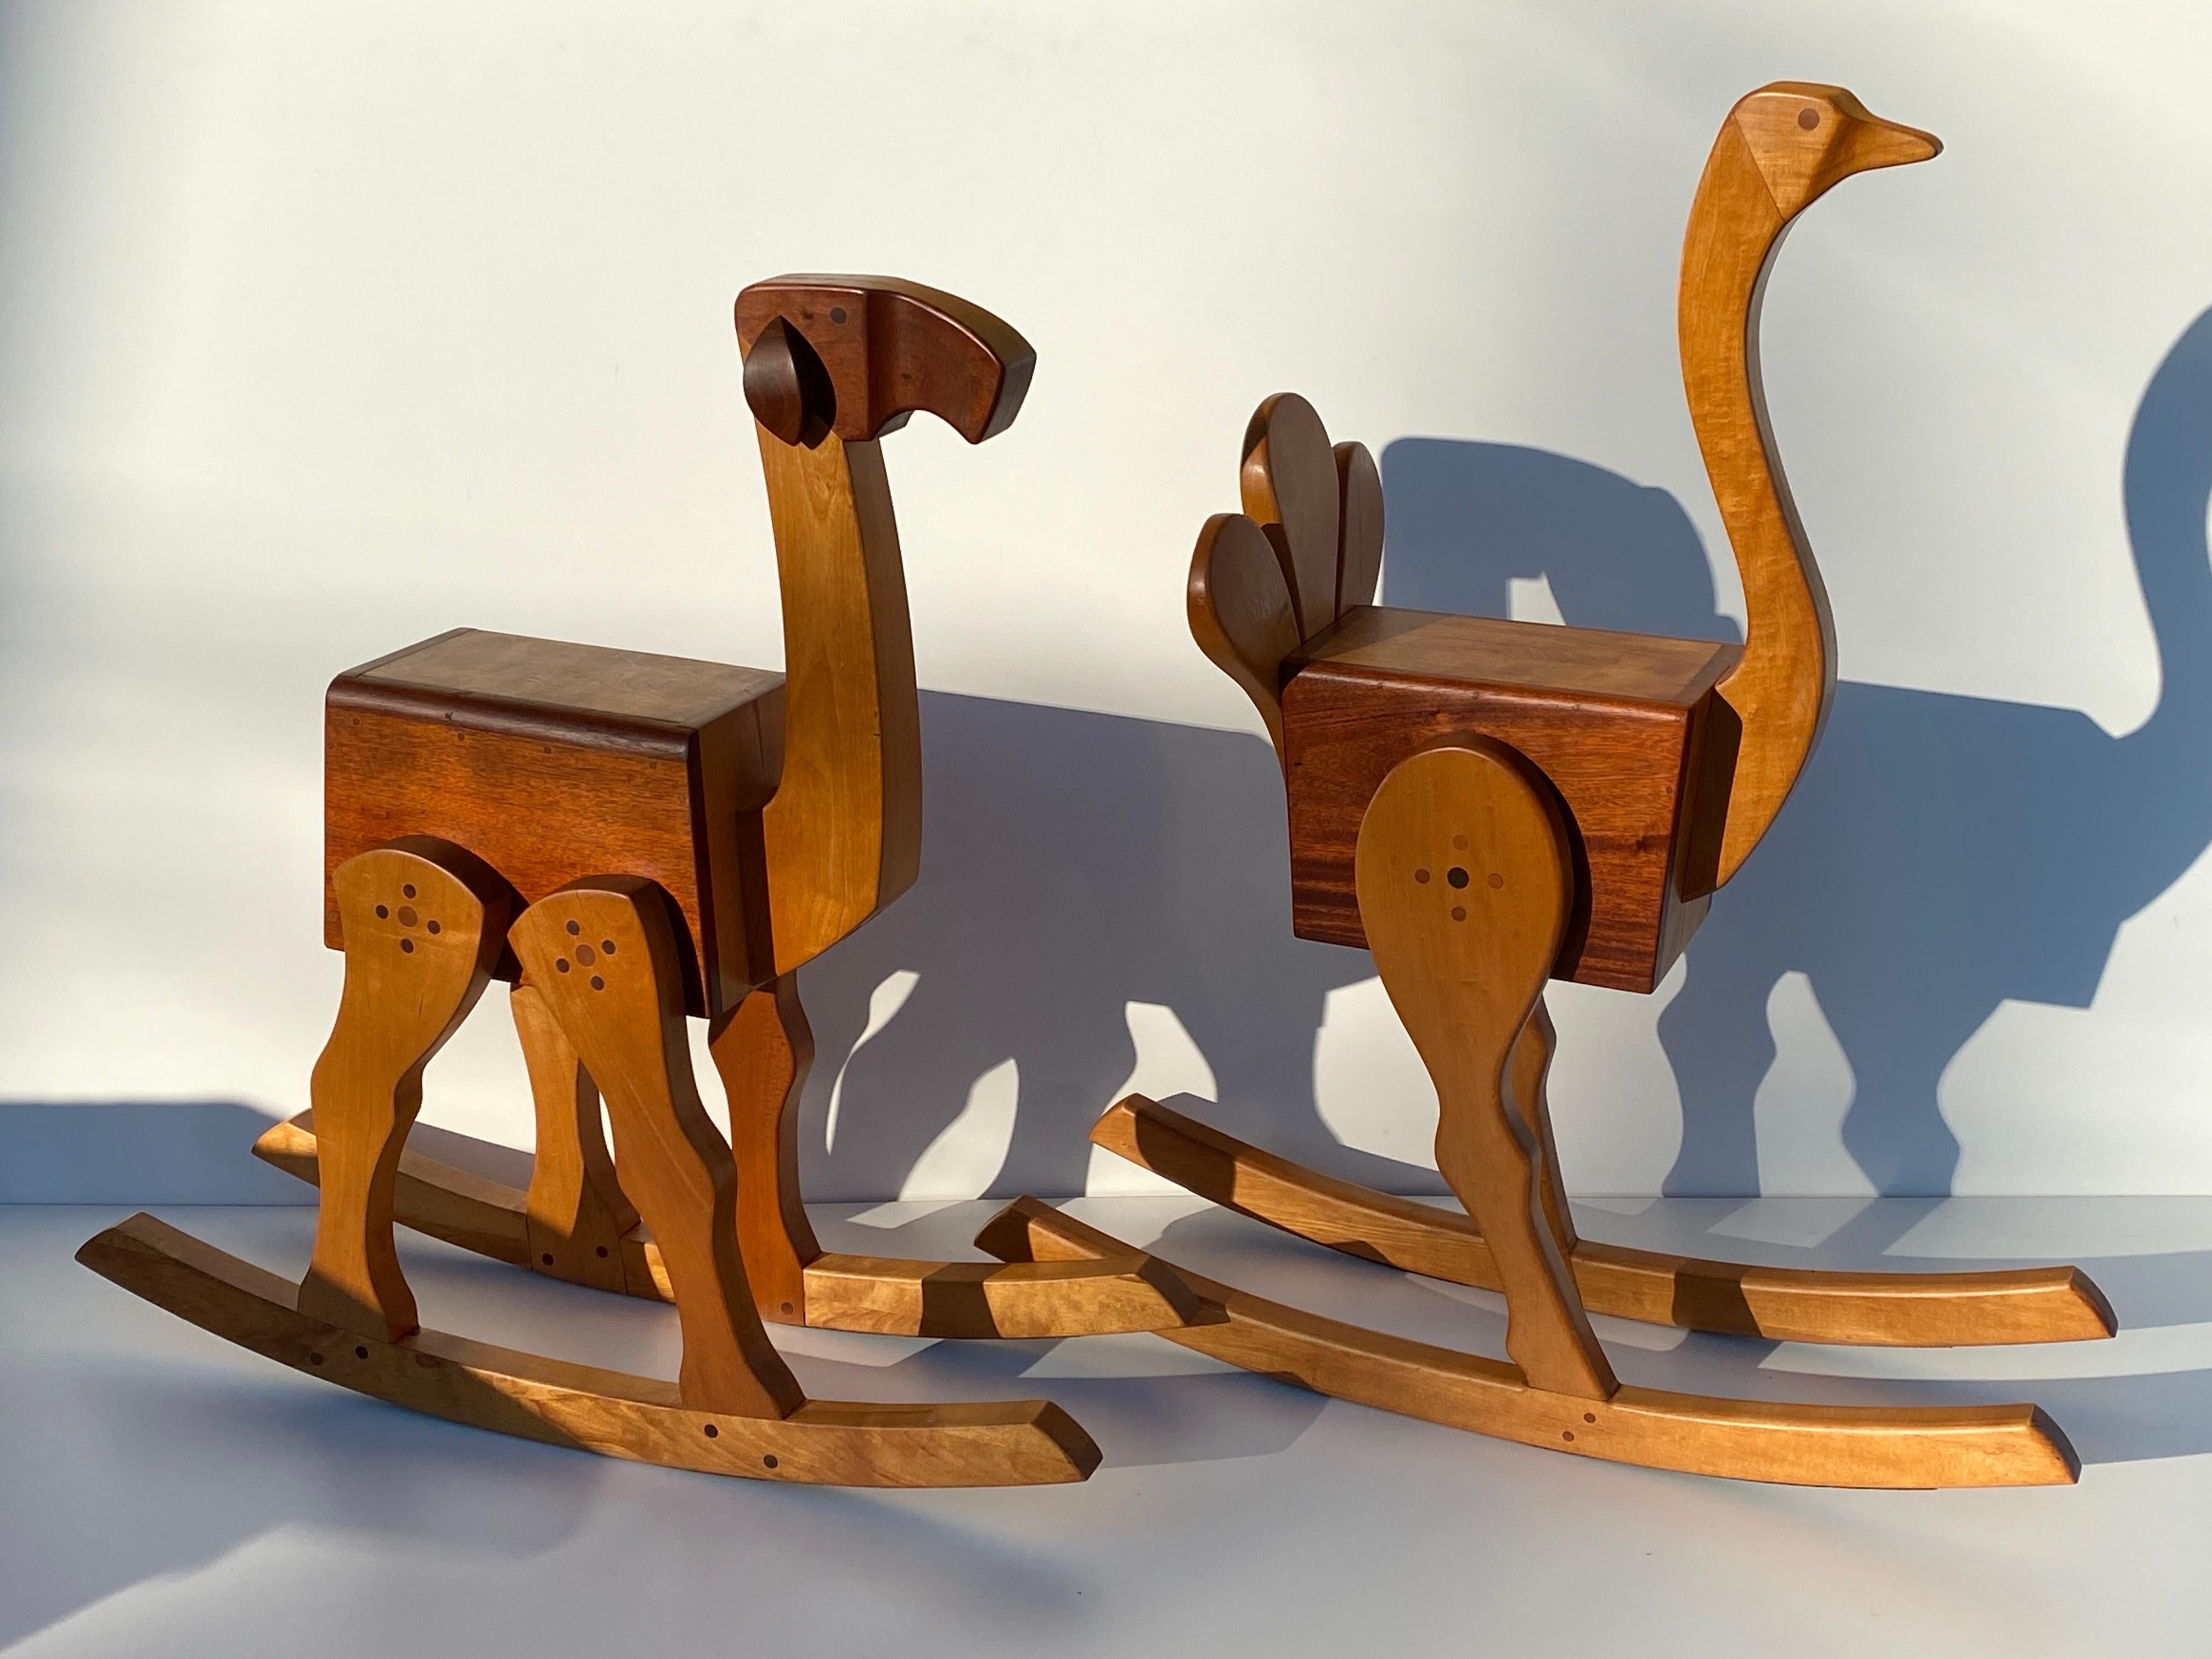 Ensemble unique de deux fauteuils à bascule en forme de carrousel en forme d'autruche et de chameau pour adultes, pouvant également être utilisés comme tabourets de bar.
Estampillé Whiting 1979 dans le style de Kaye, en acajou et érable blanc. Un